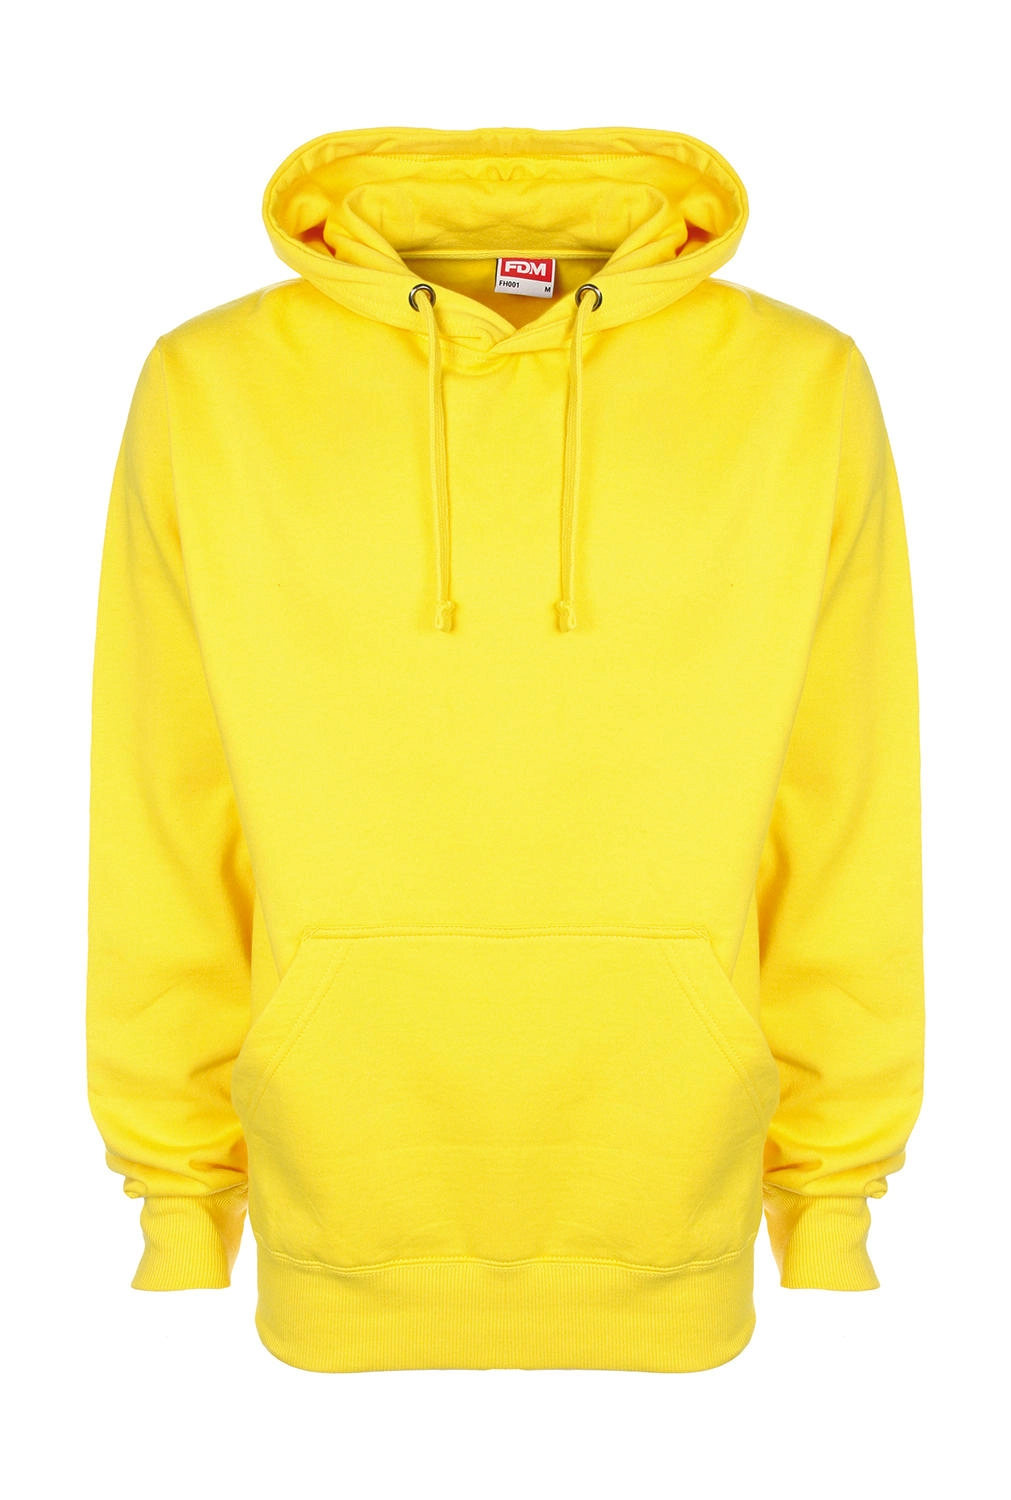 Original Hoodie zum Besticken und Bedrucken in der Farbe Empire Yellow mit Ihren Logo, Schriftzug oder Motiv.